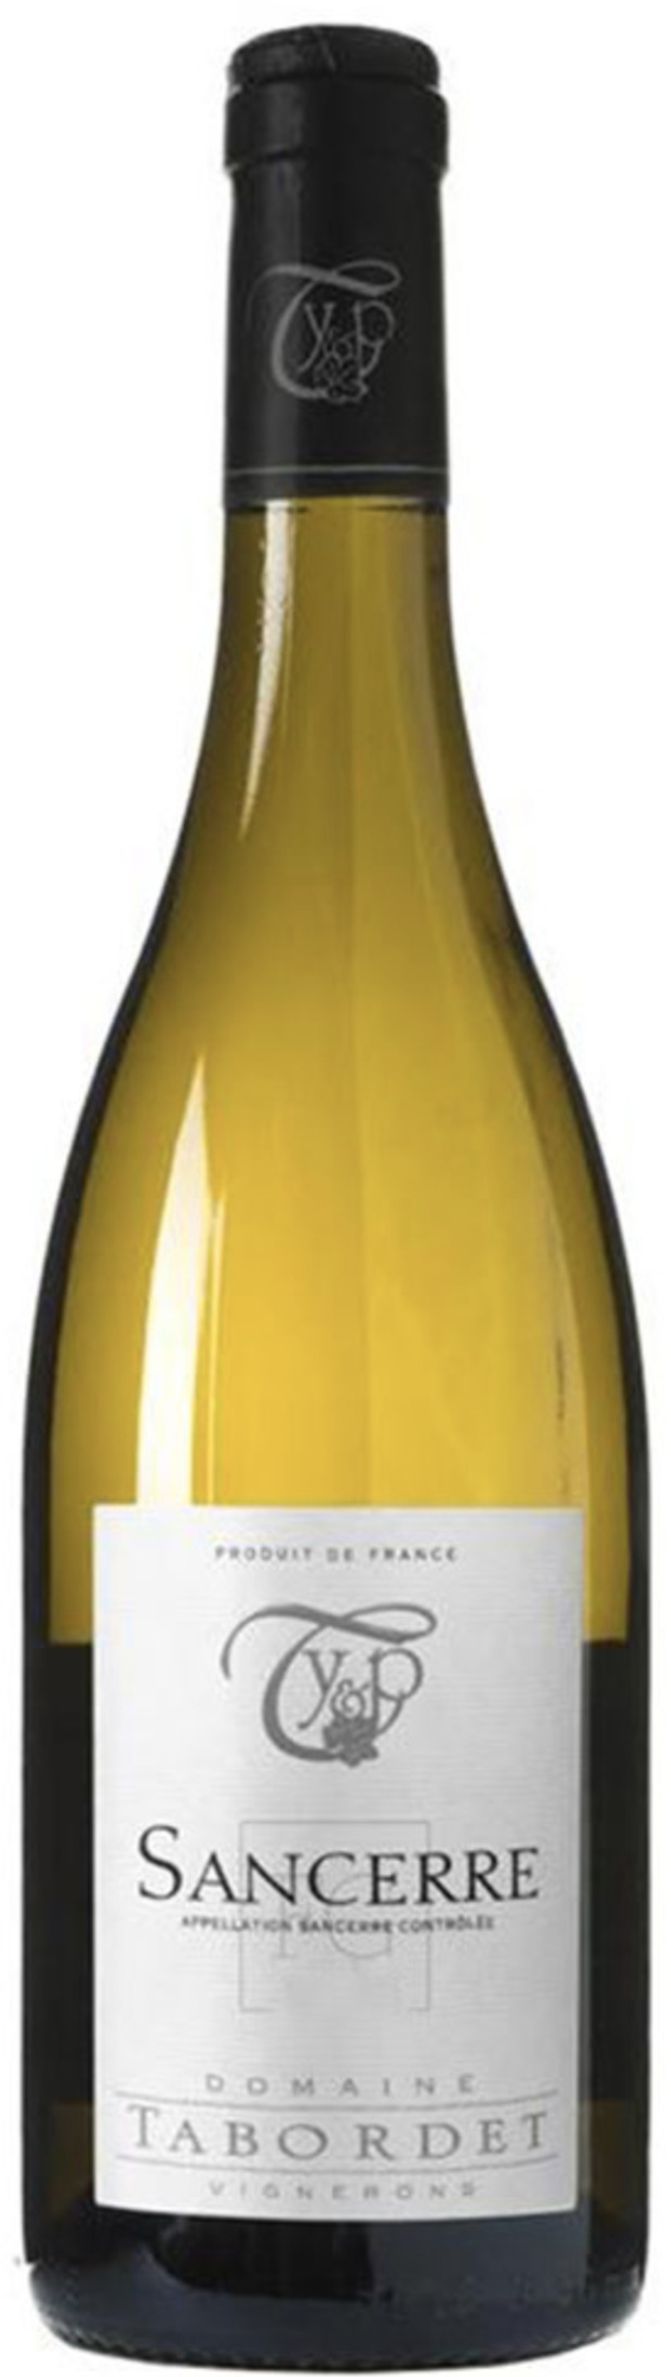 Вино с защищенным наименованием места происхождения "Сансер Домэн Таборде" АОС сухое белое, креп. 12,5%, емк 0,75л